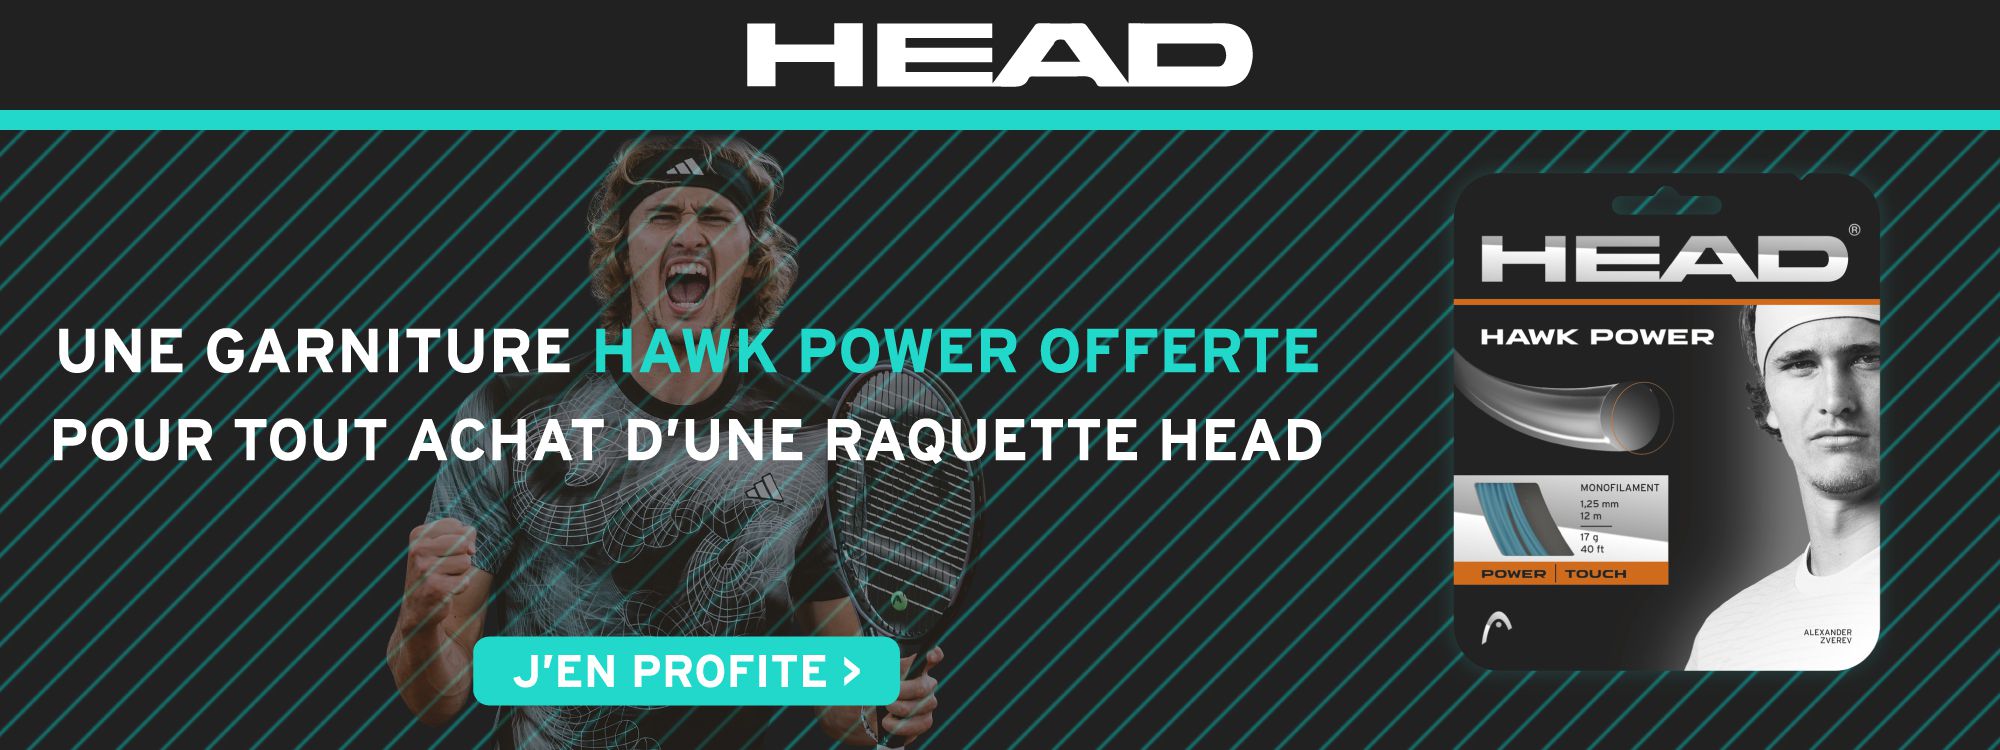 Head Hawk Power